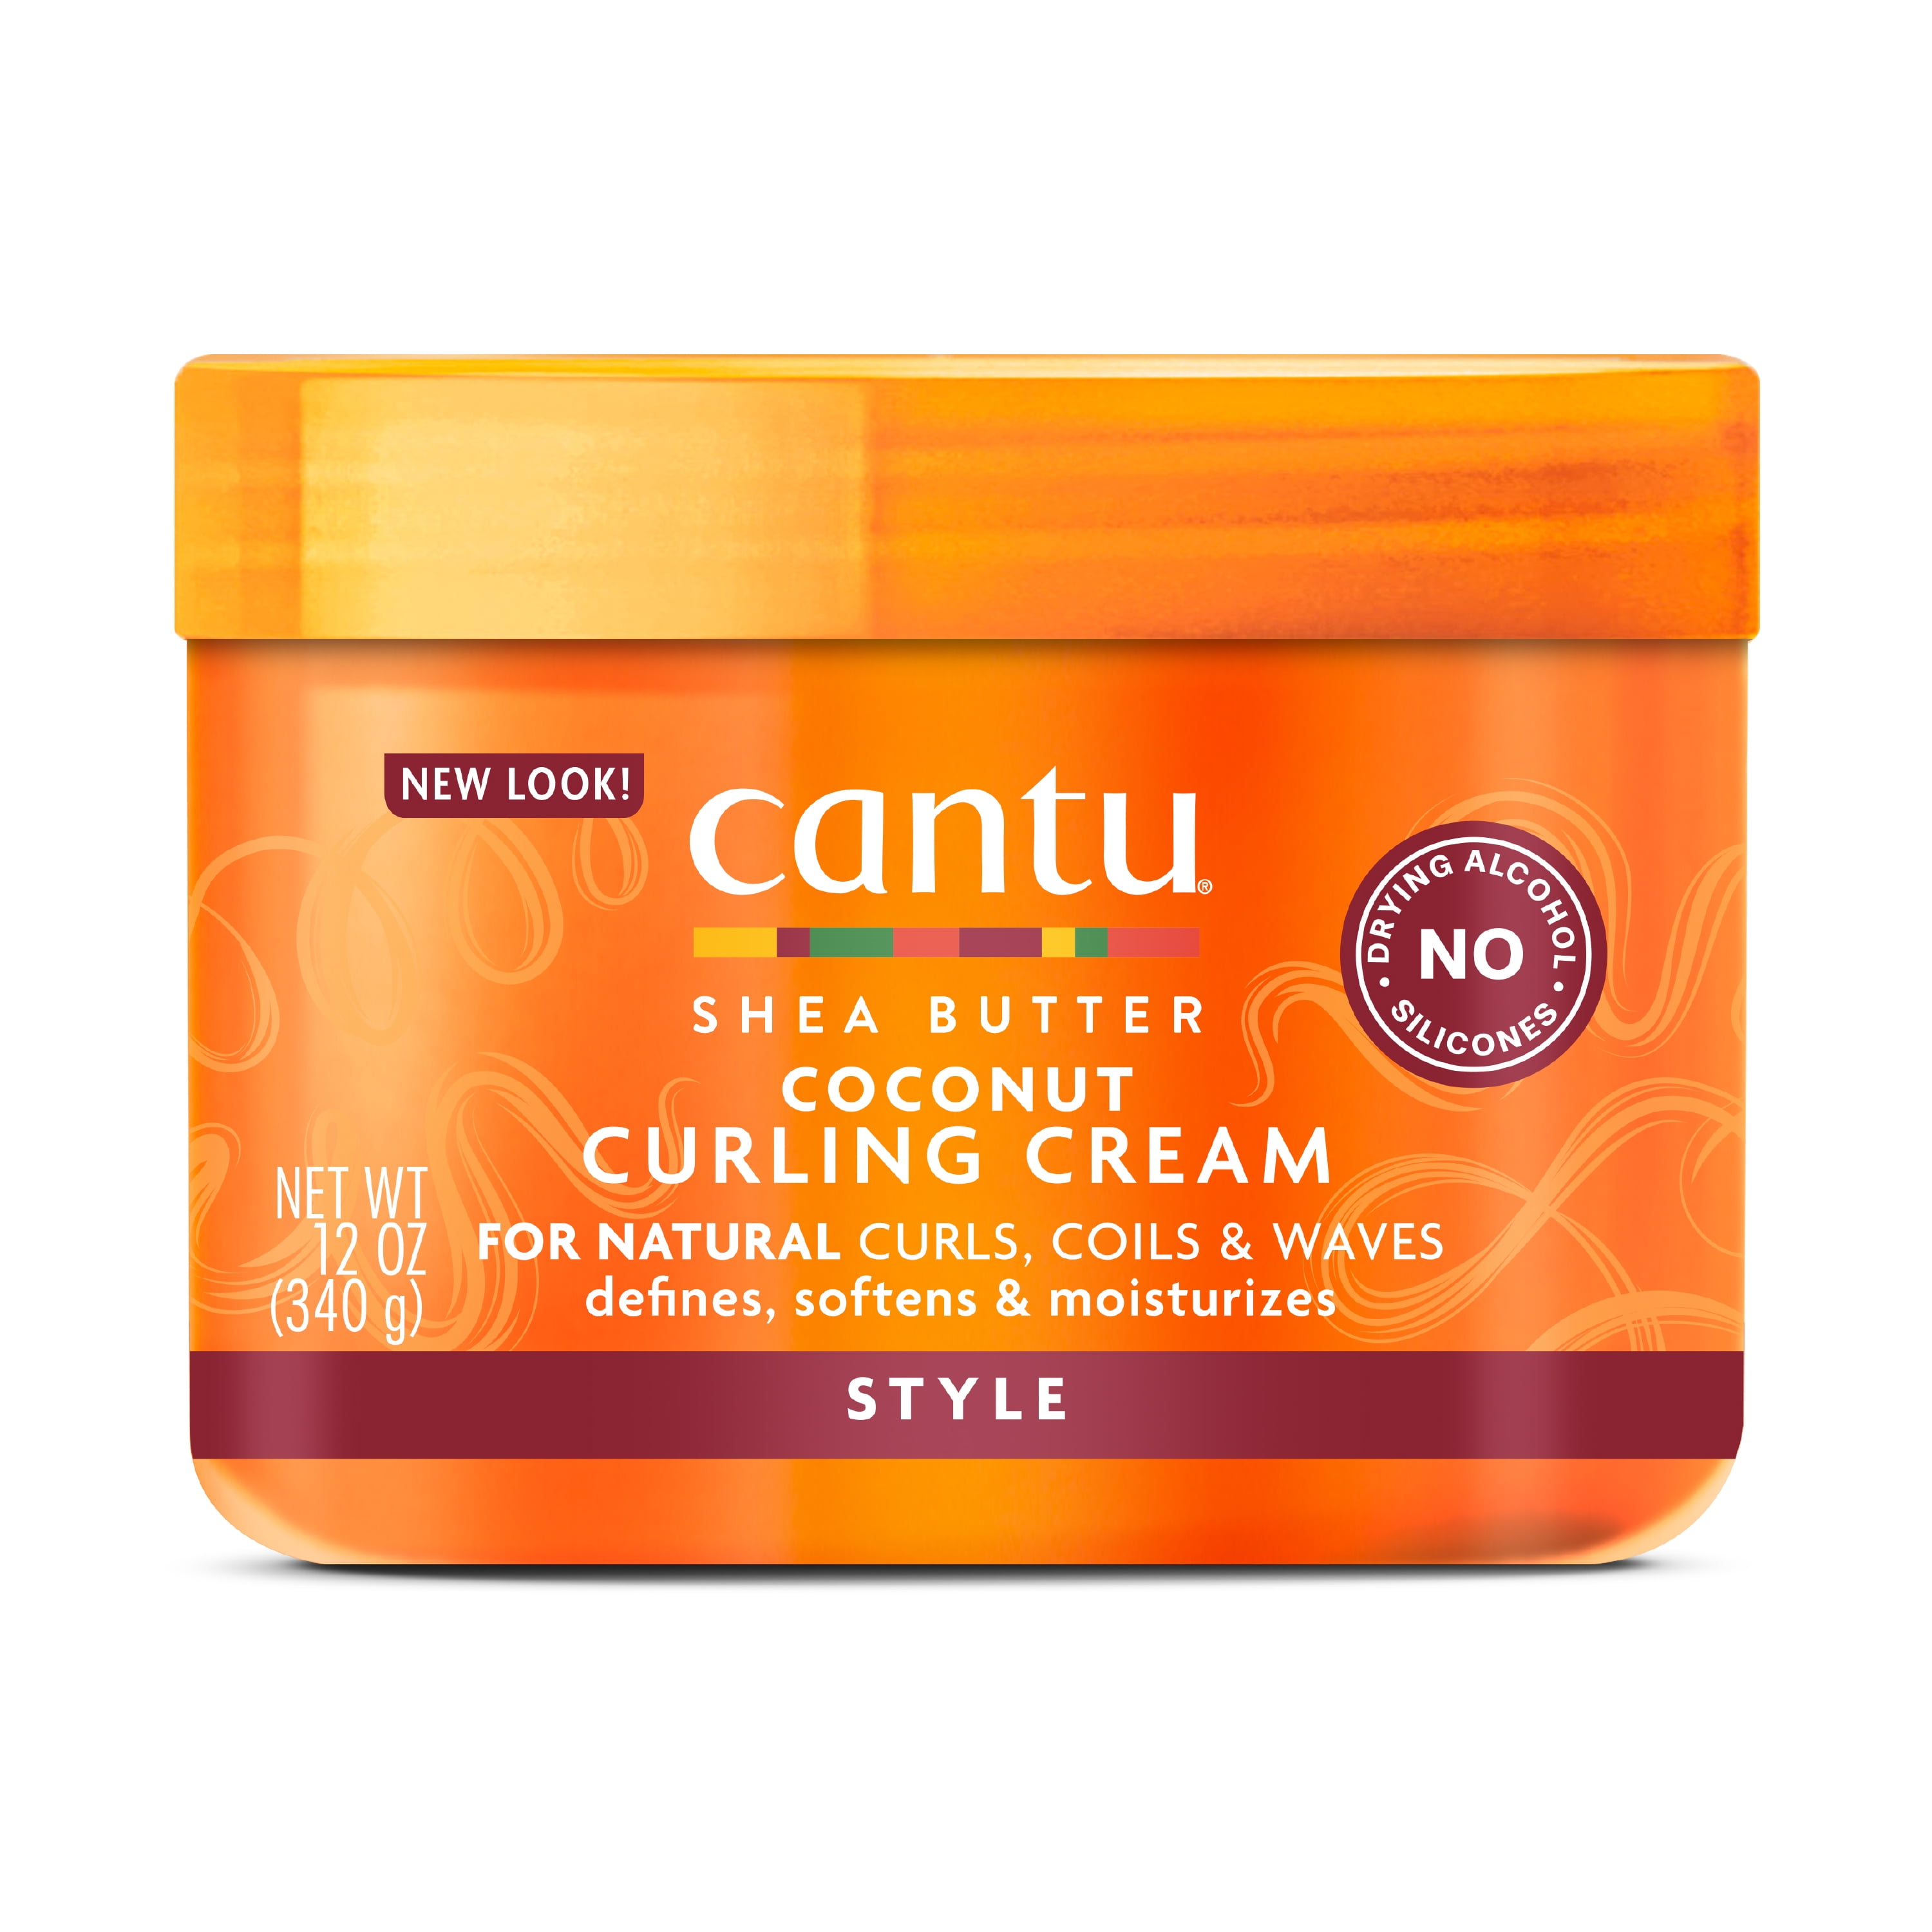 Cantu Coconut Curling Cream with Shea Butter, 12 fl oz 